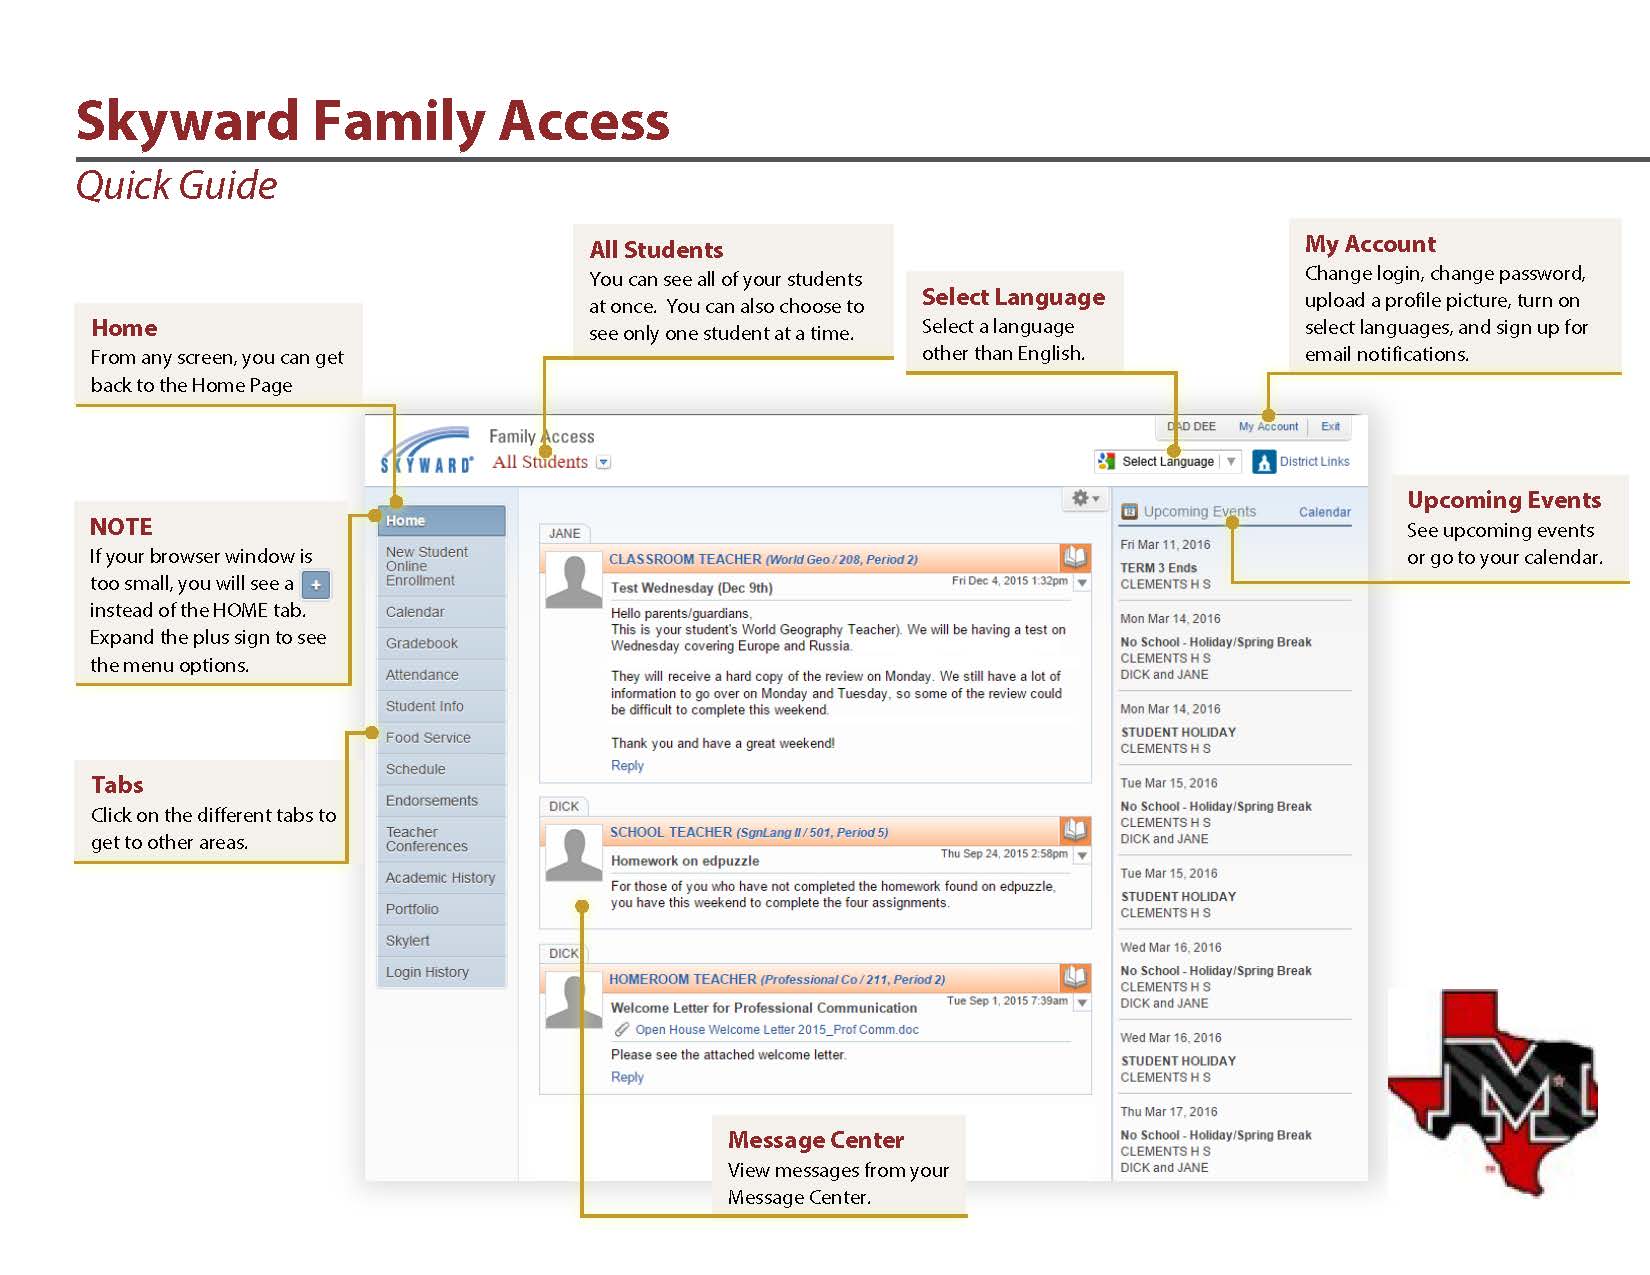 Skyward Family Access Guide